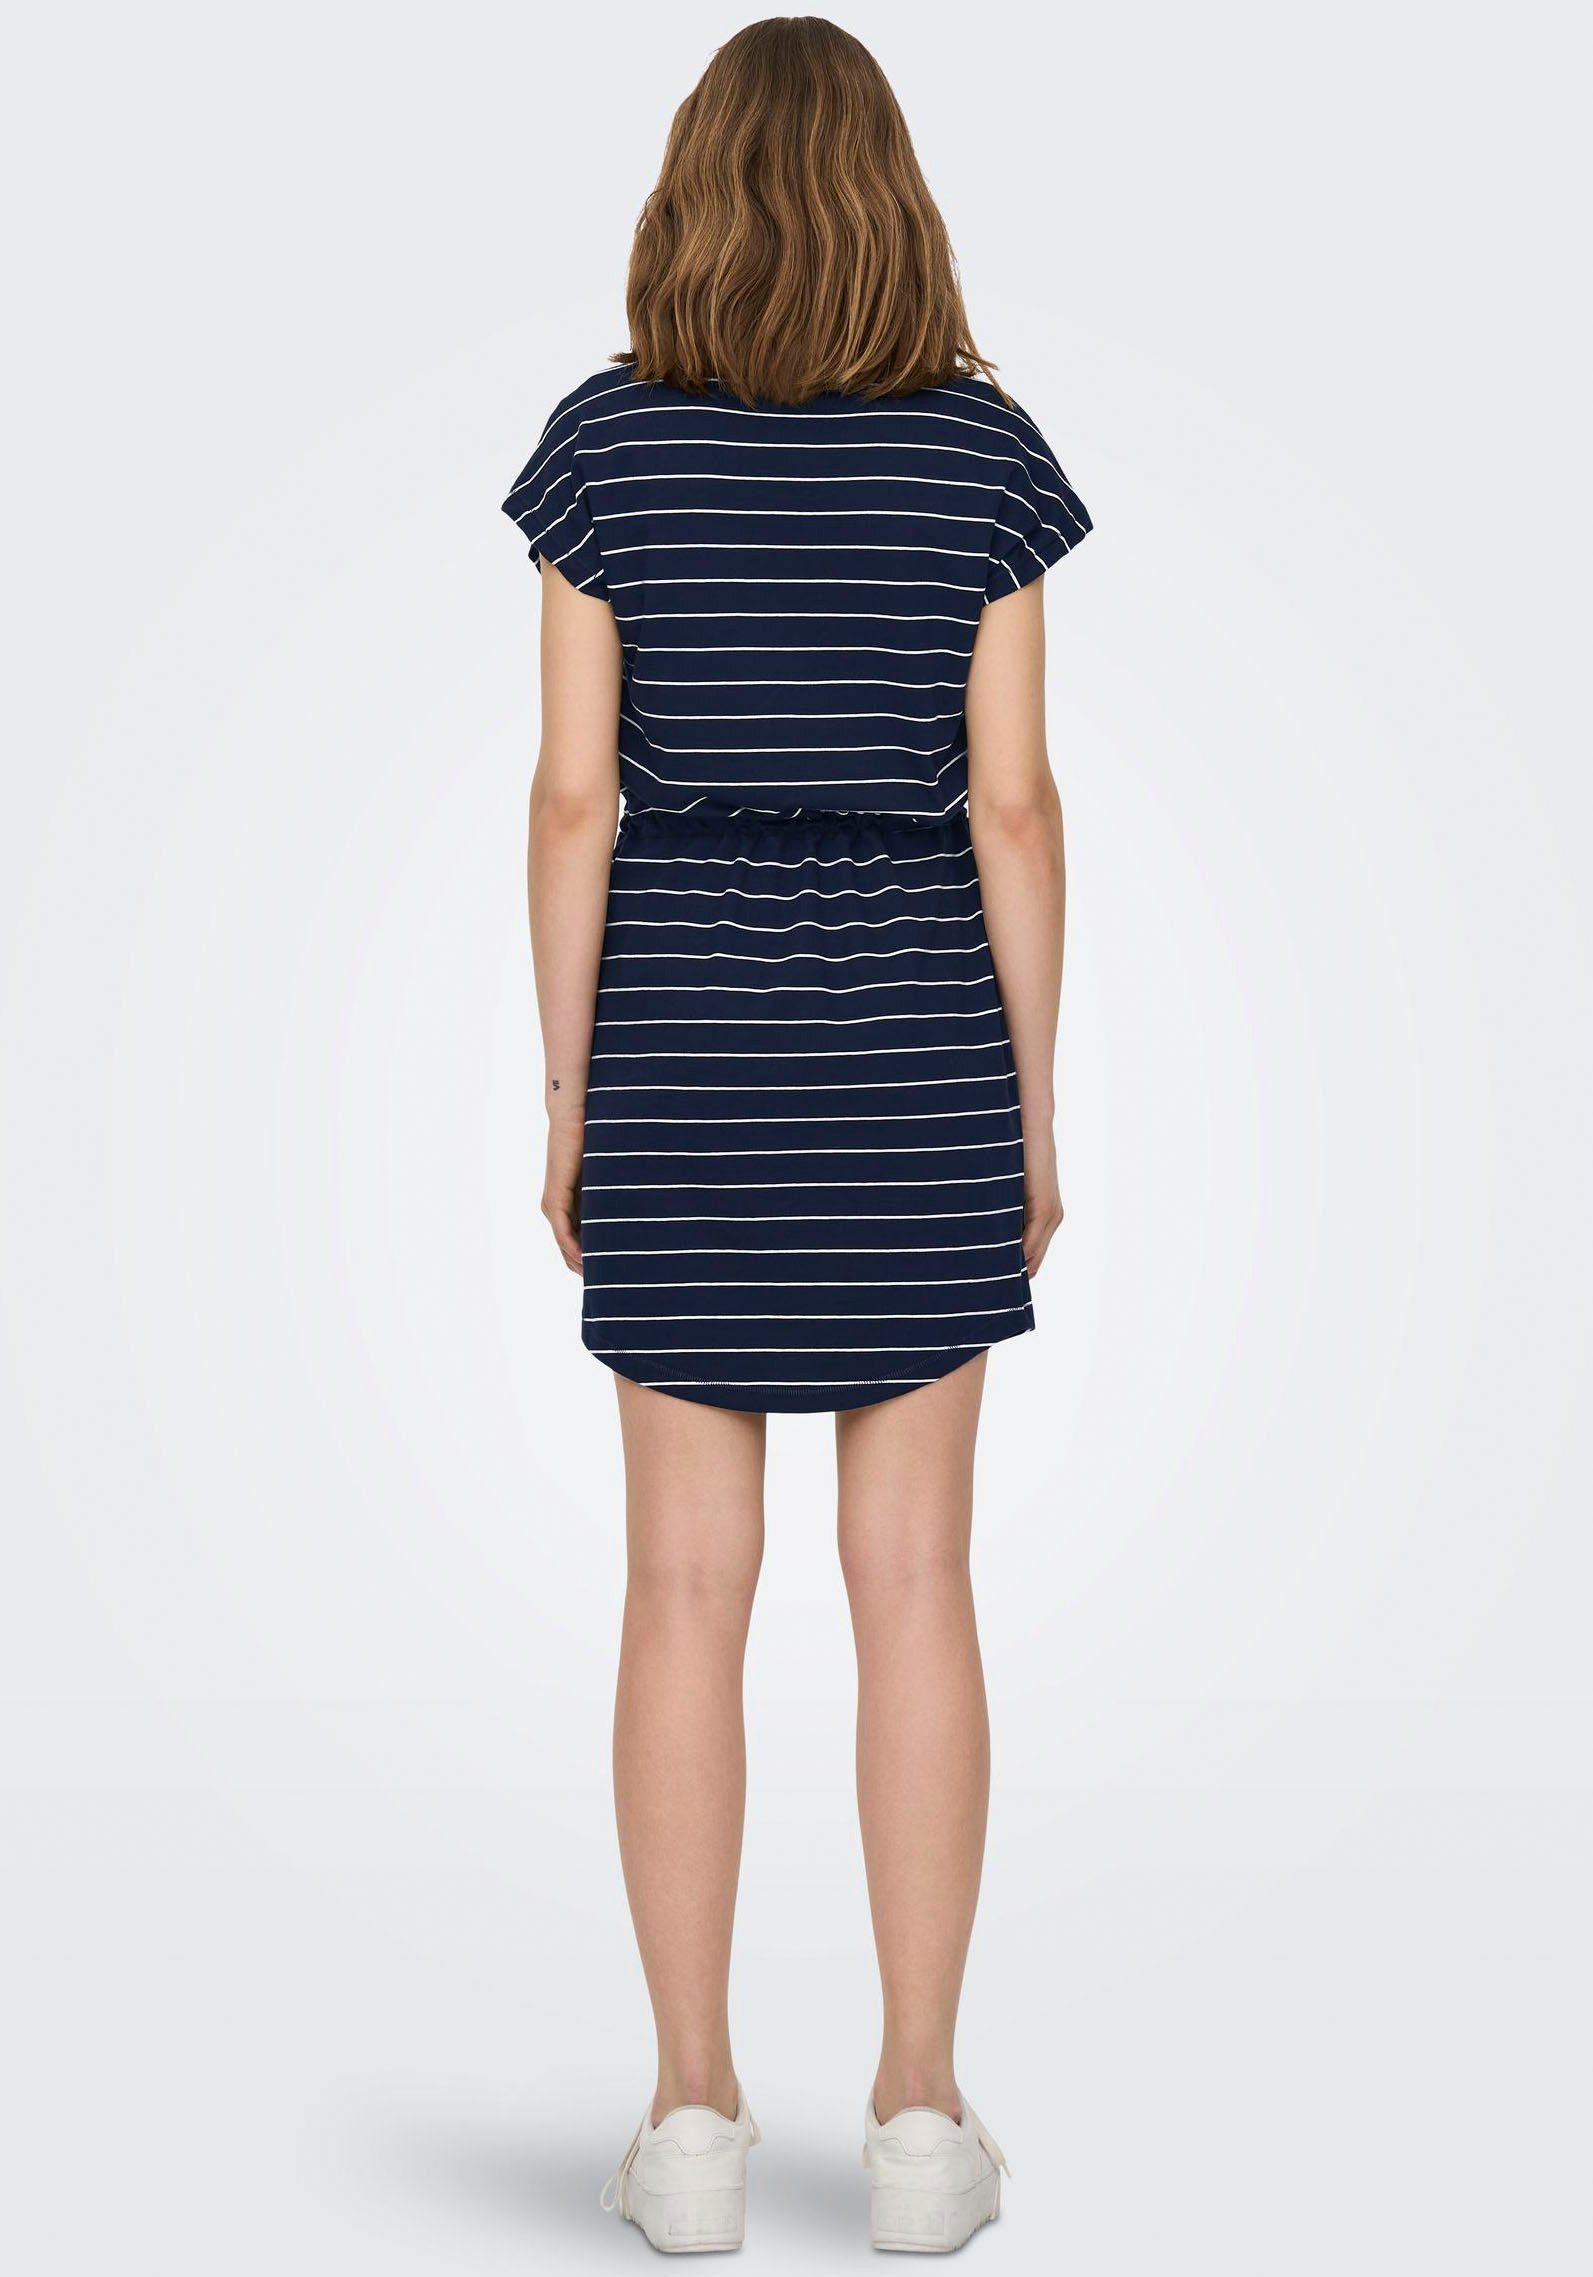 NOOS Sky Night Designs S/S ONLMAY in verschiedenen Minikleid stripes DRESS ONLY